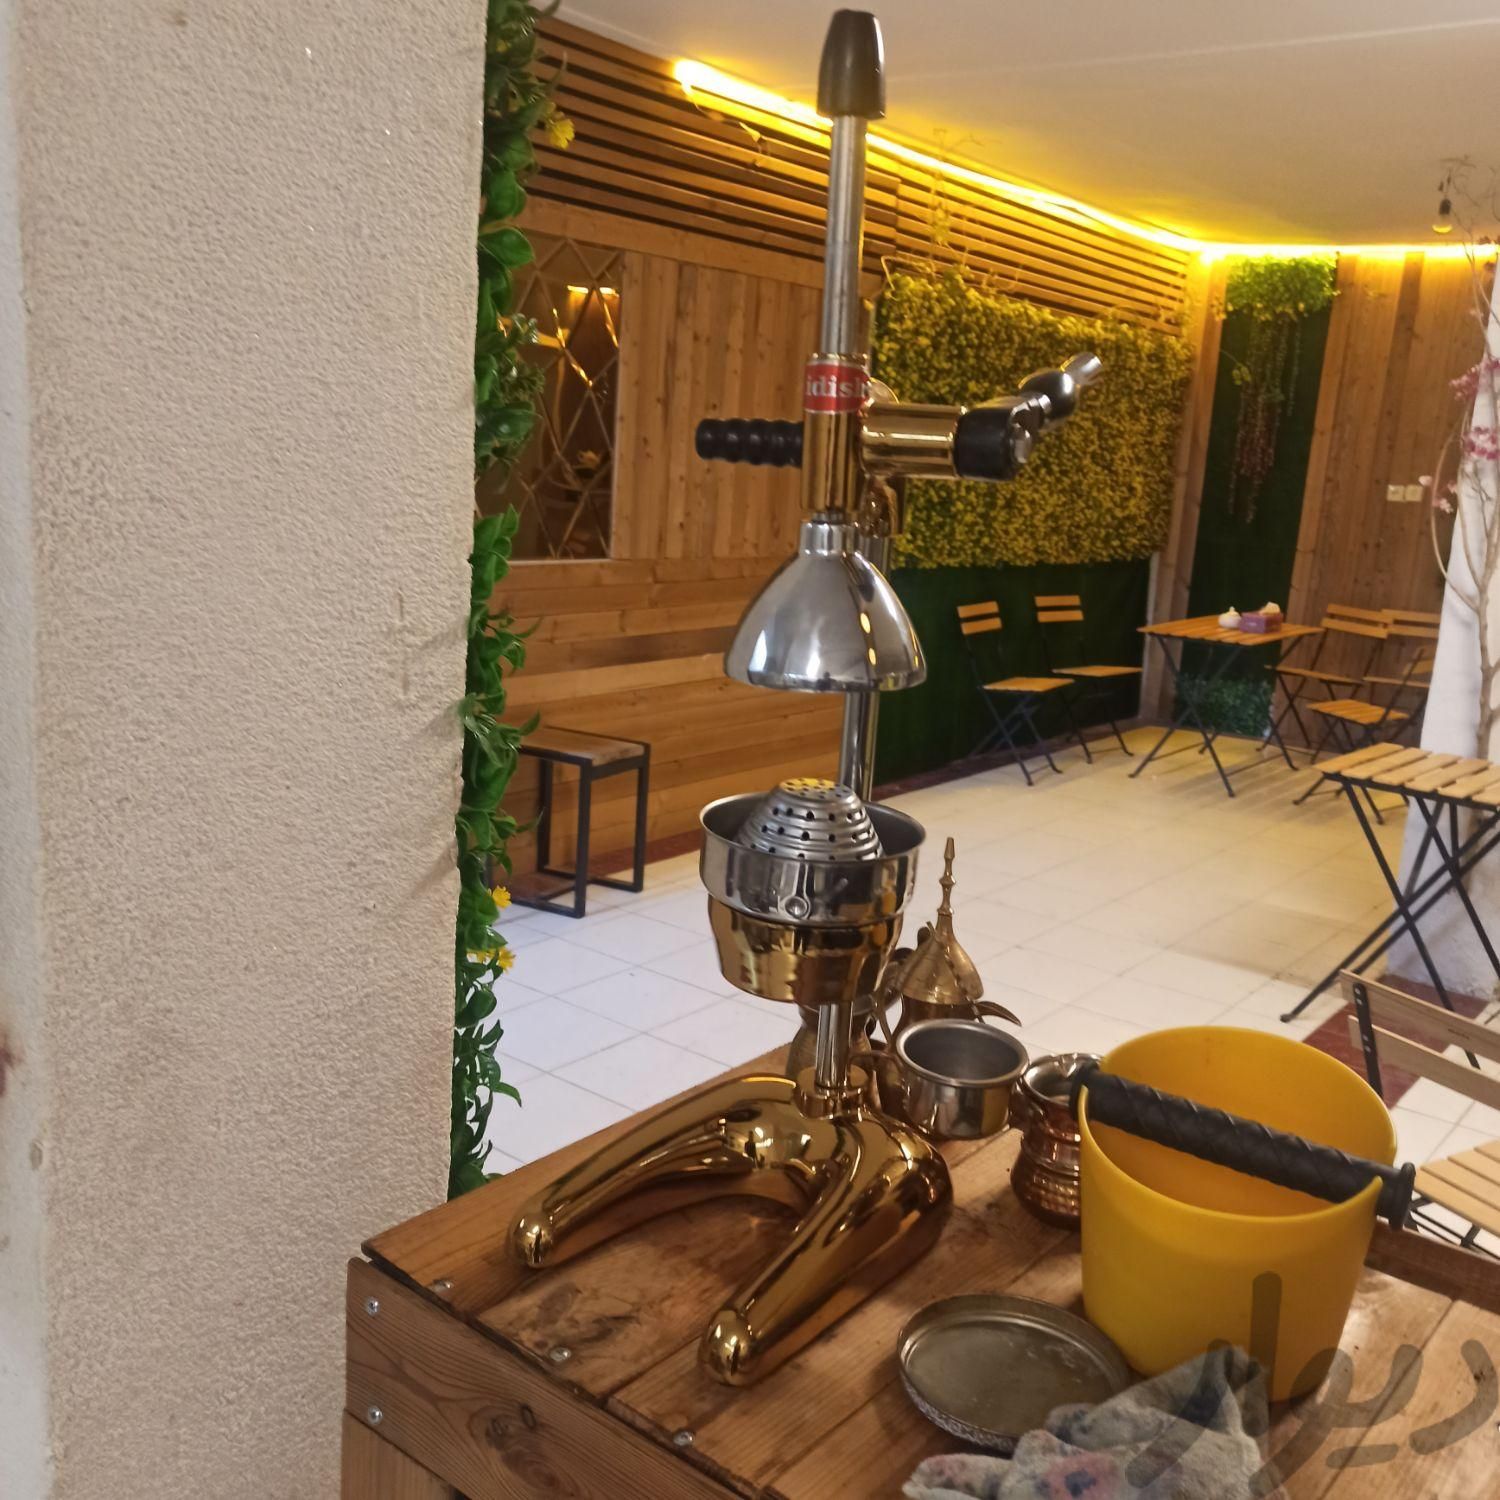 وسایل کافه ...|کافی‌شاپ و رستوران|کرمانشاه, |دیوار